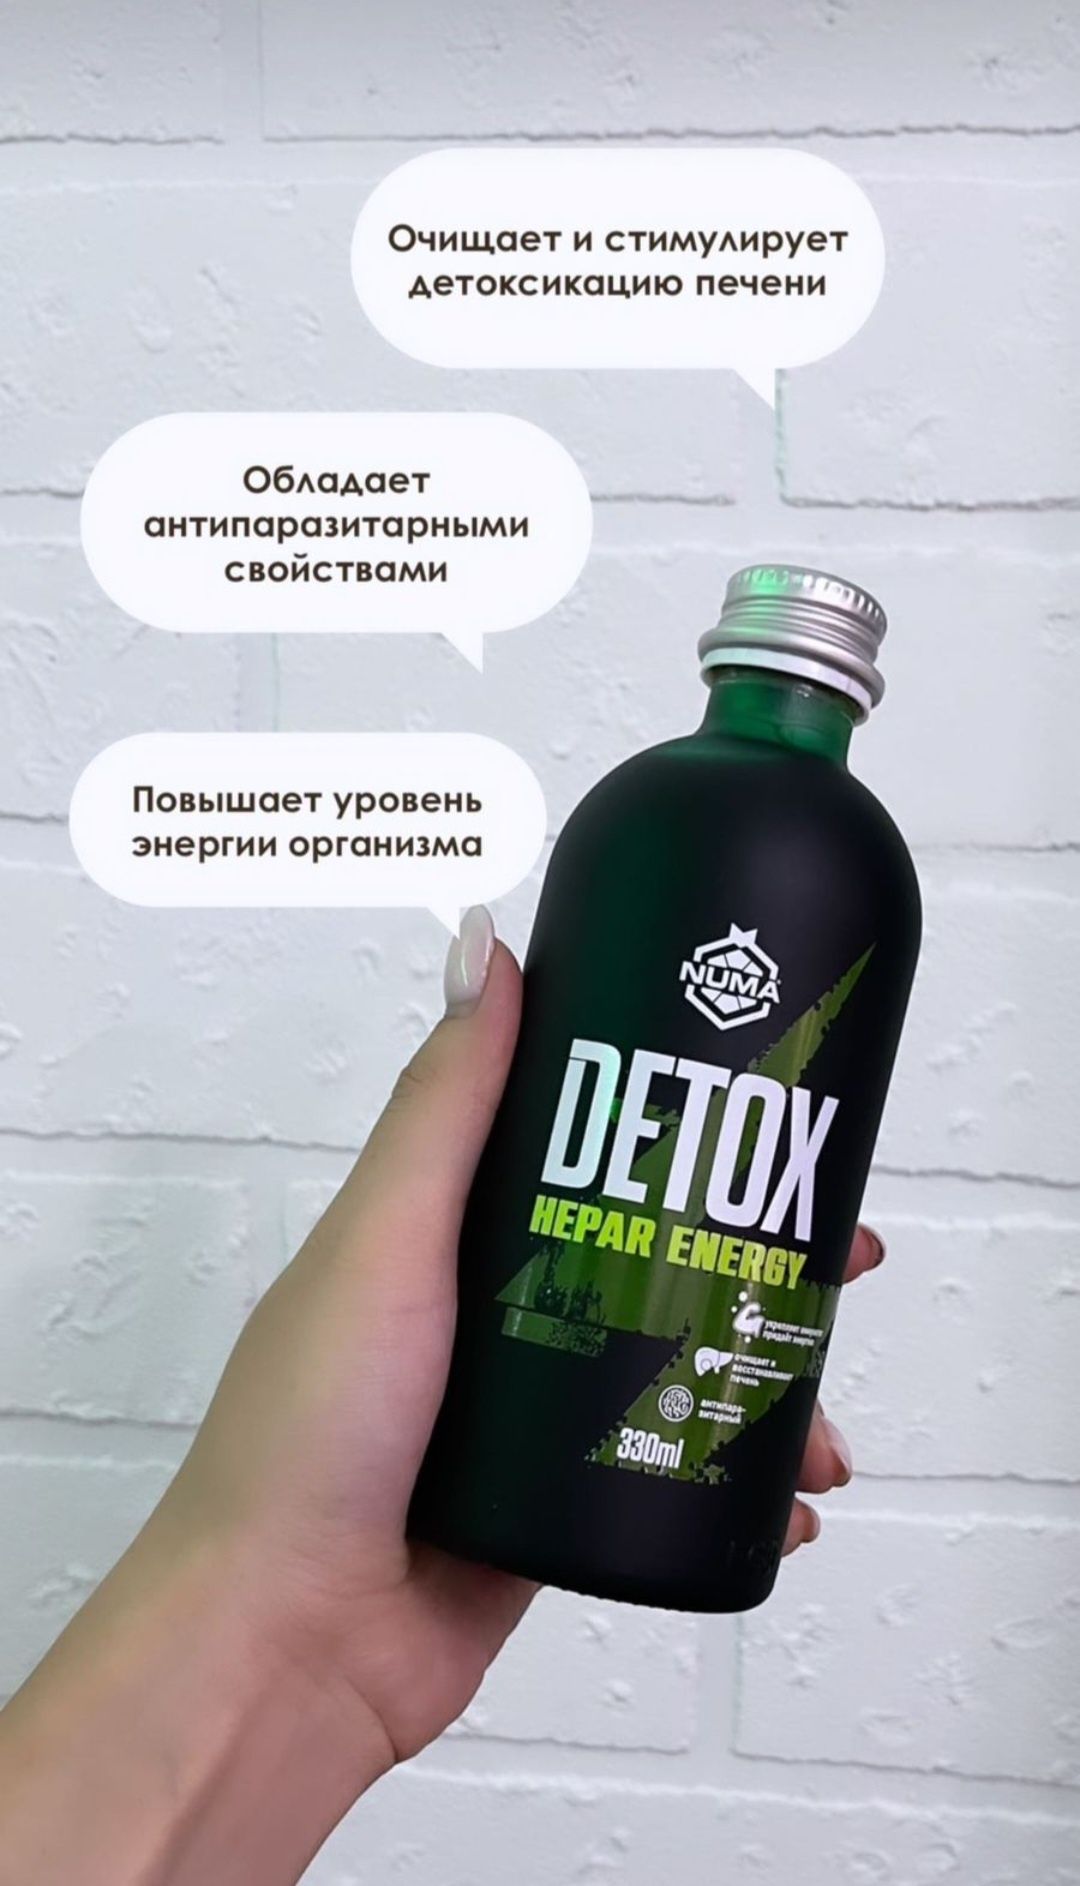 Detox/Hepar Energy/Детокс/Энергия//Премиум класса/очищение